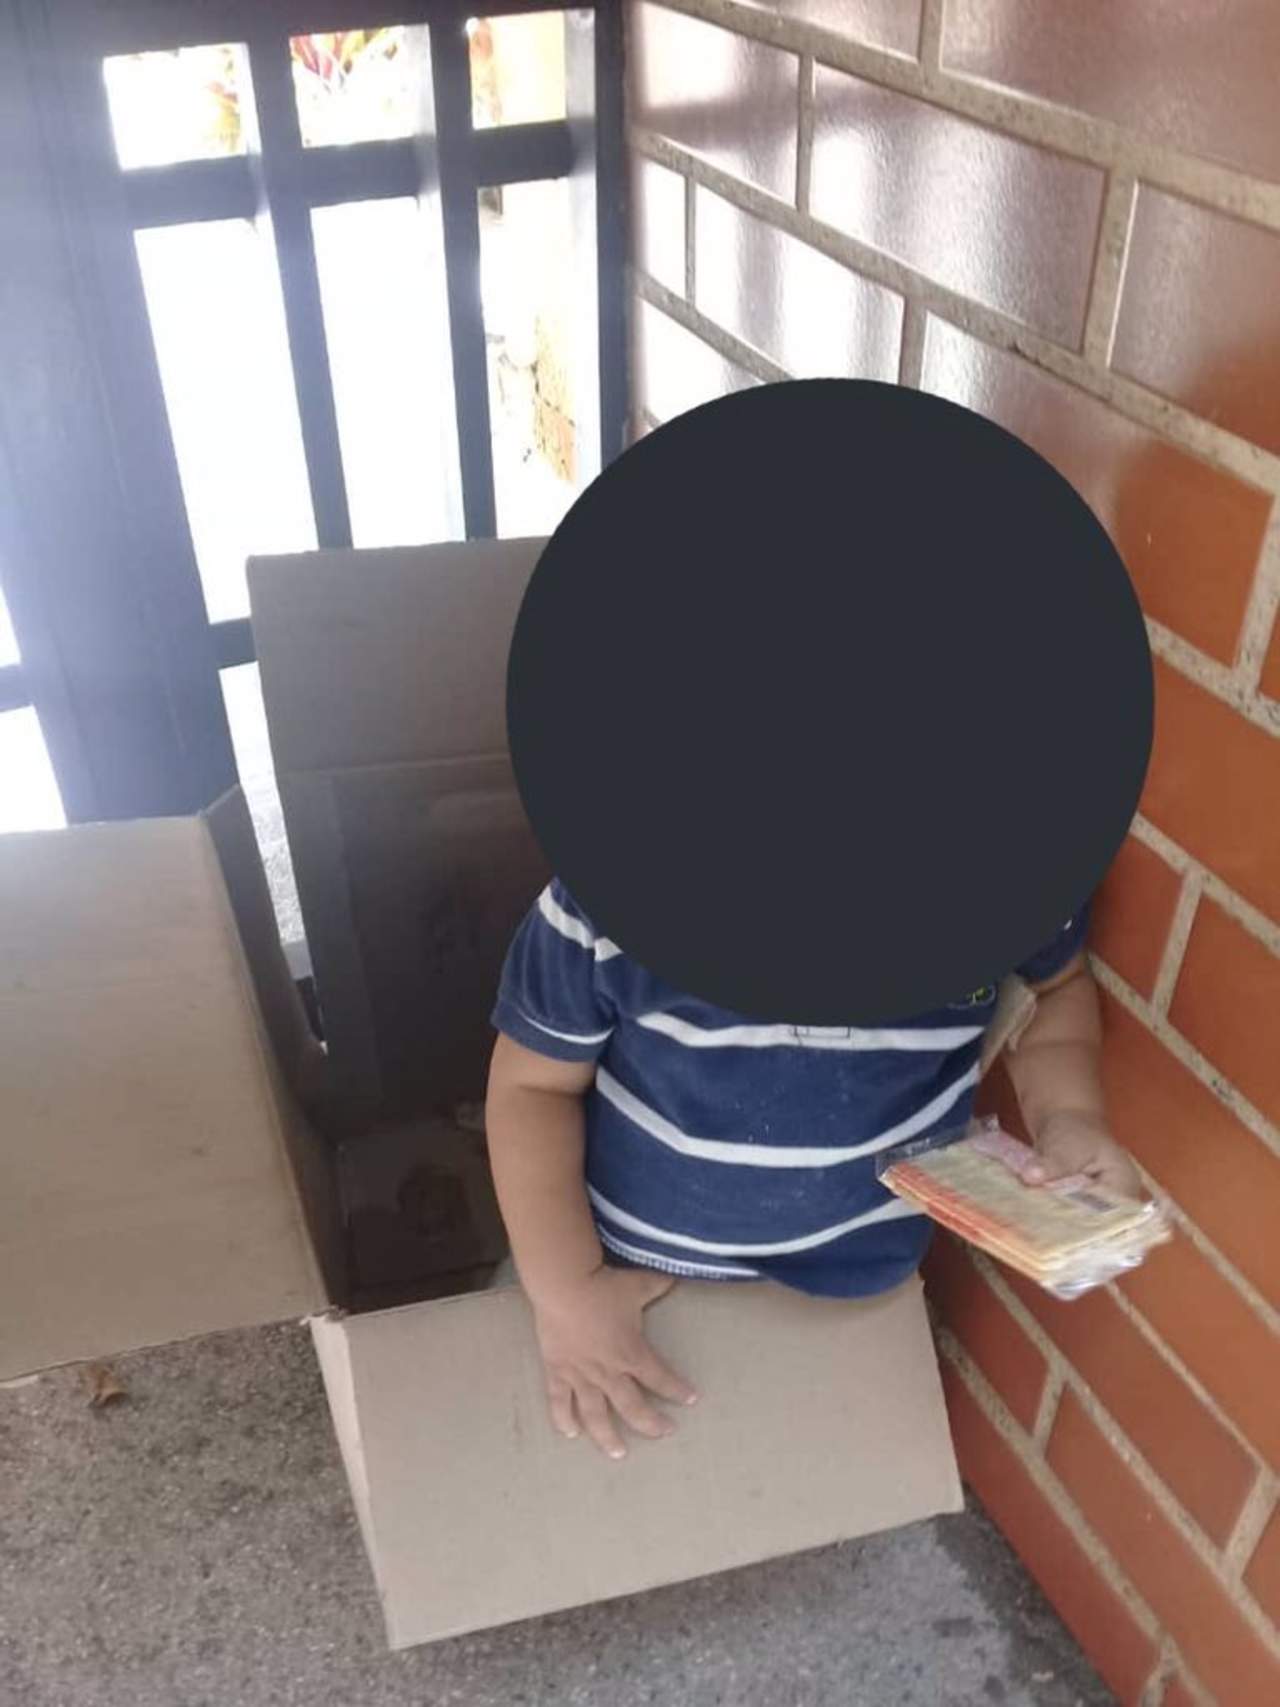 Vecinos de la urbanización El Marqués, en el municipio caraqueño de Sucre, notificaron a la policía local sobre el hallazgo del bebé dentro de una caja en la entrada de uno de los edificios. (ESPECIAL)